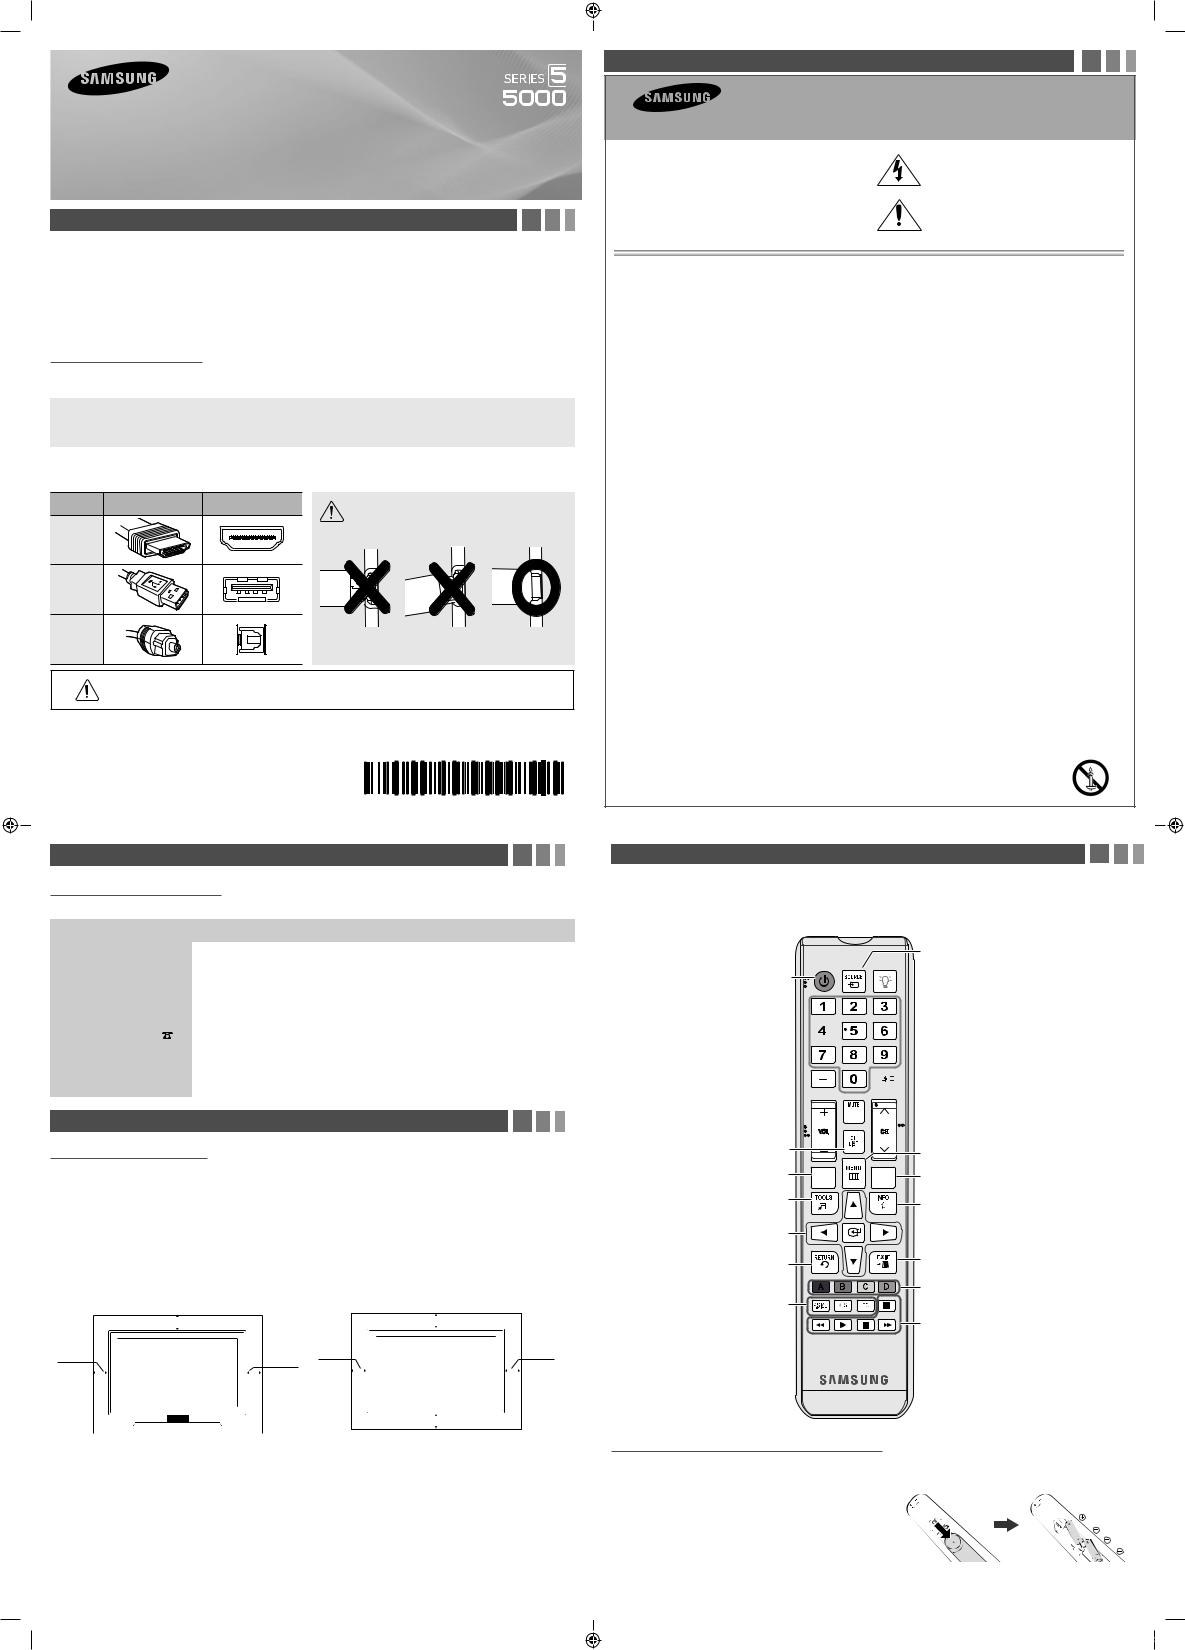 Samsung UN39FH5000FXZA User Manual